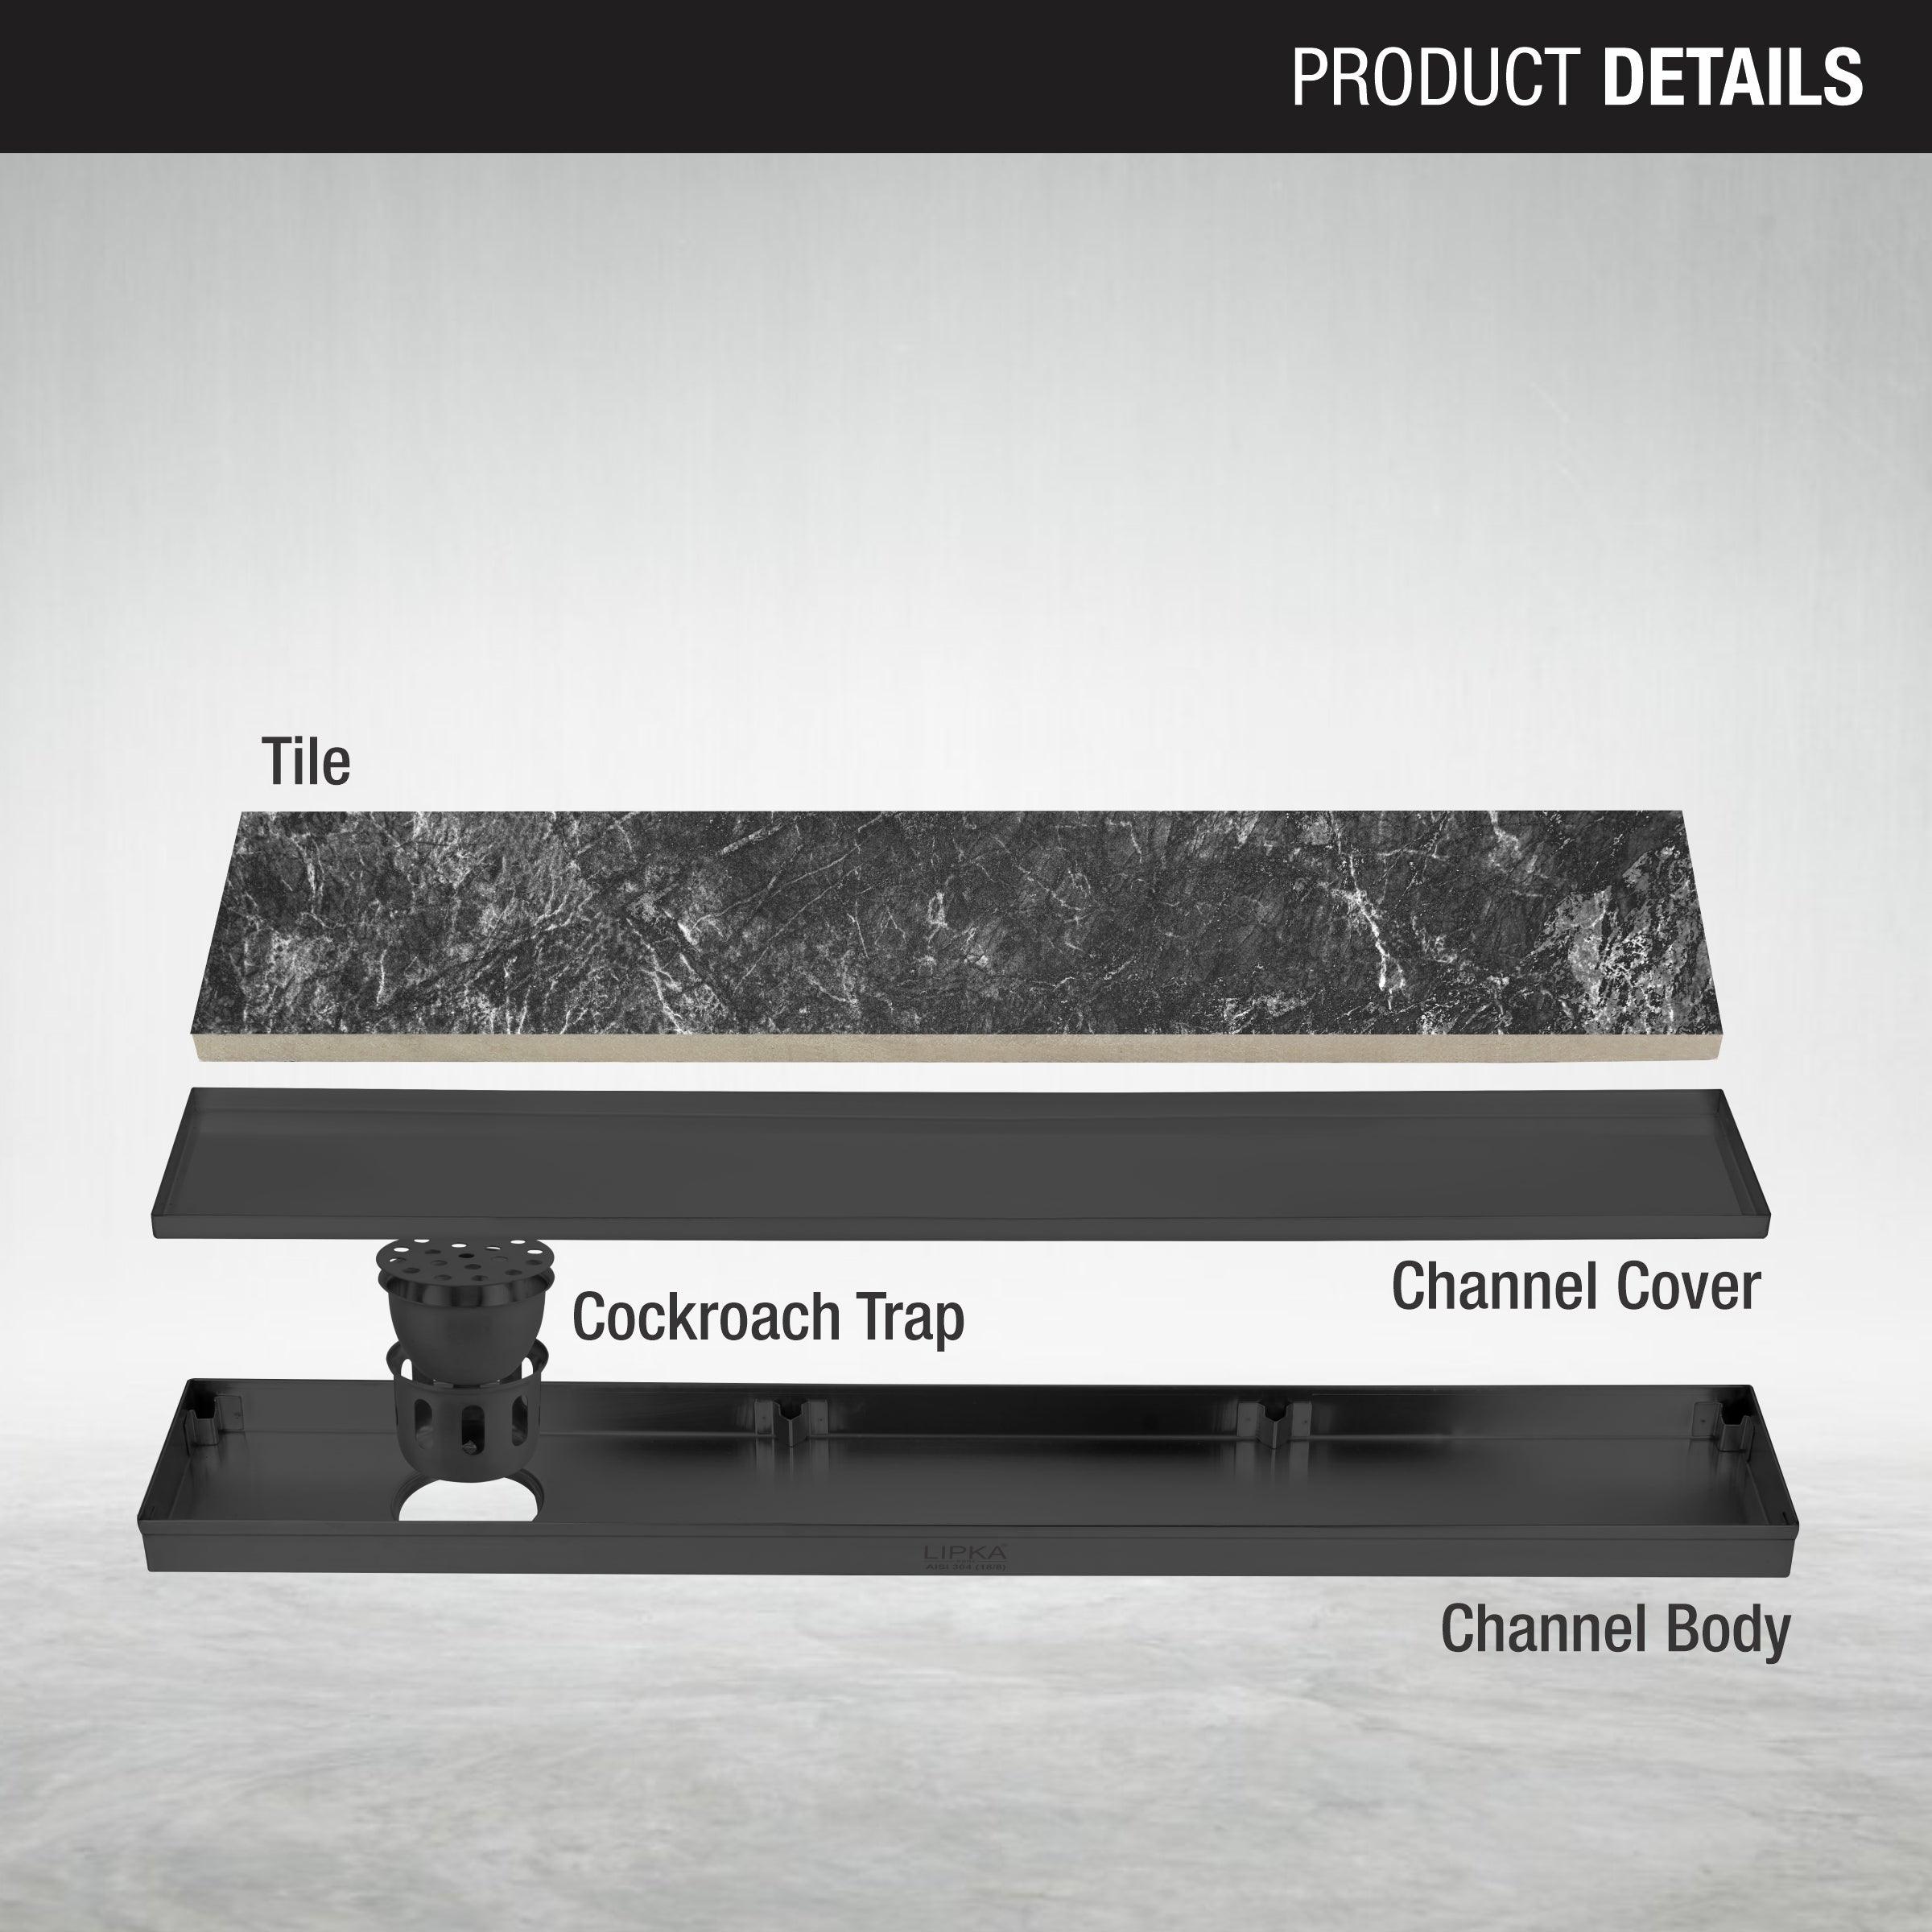 Tile Insert Shower Drain Channel - Black (48 x 4 Inches) - LIPKA - Lipka Home